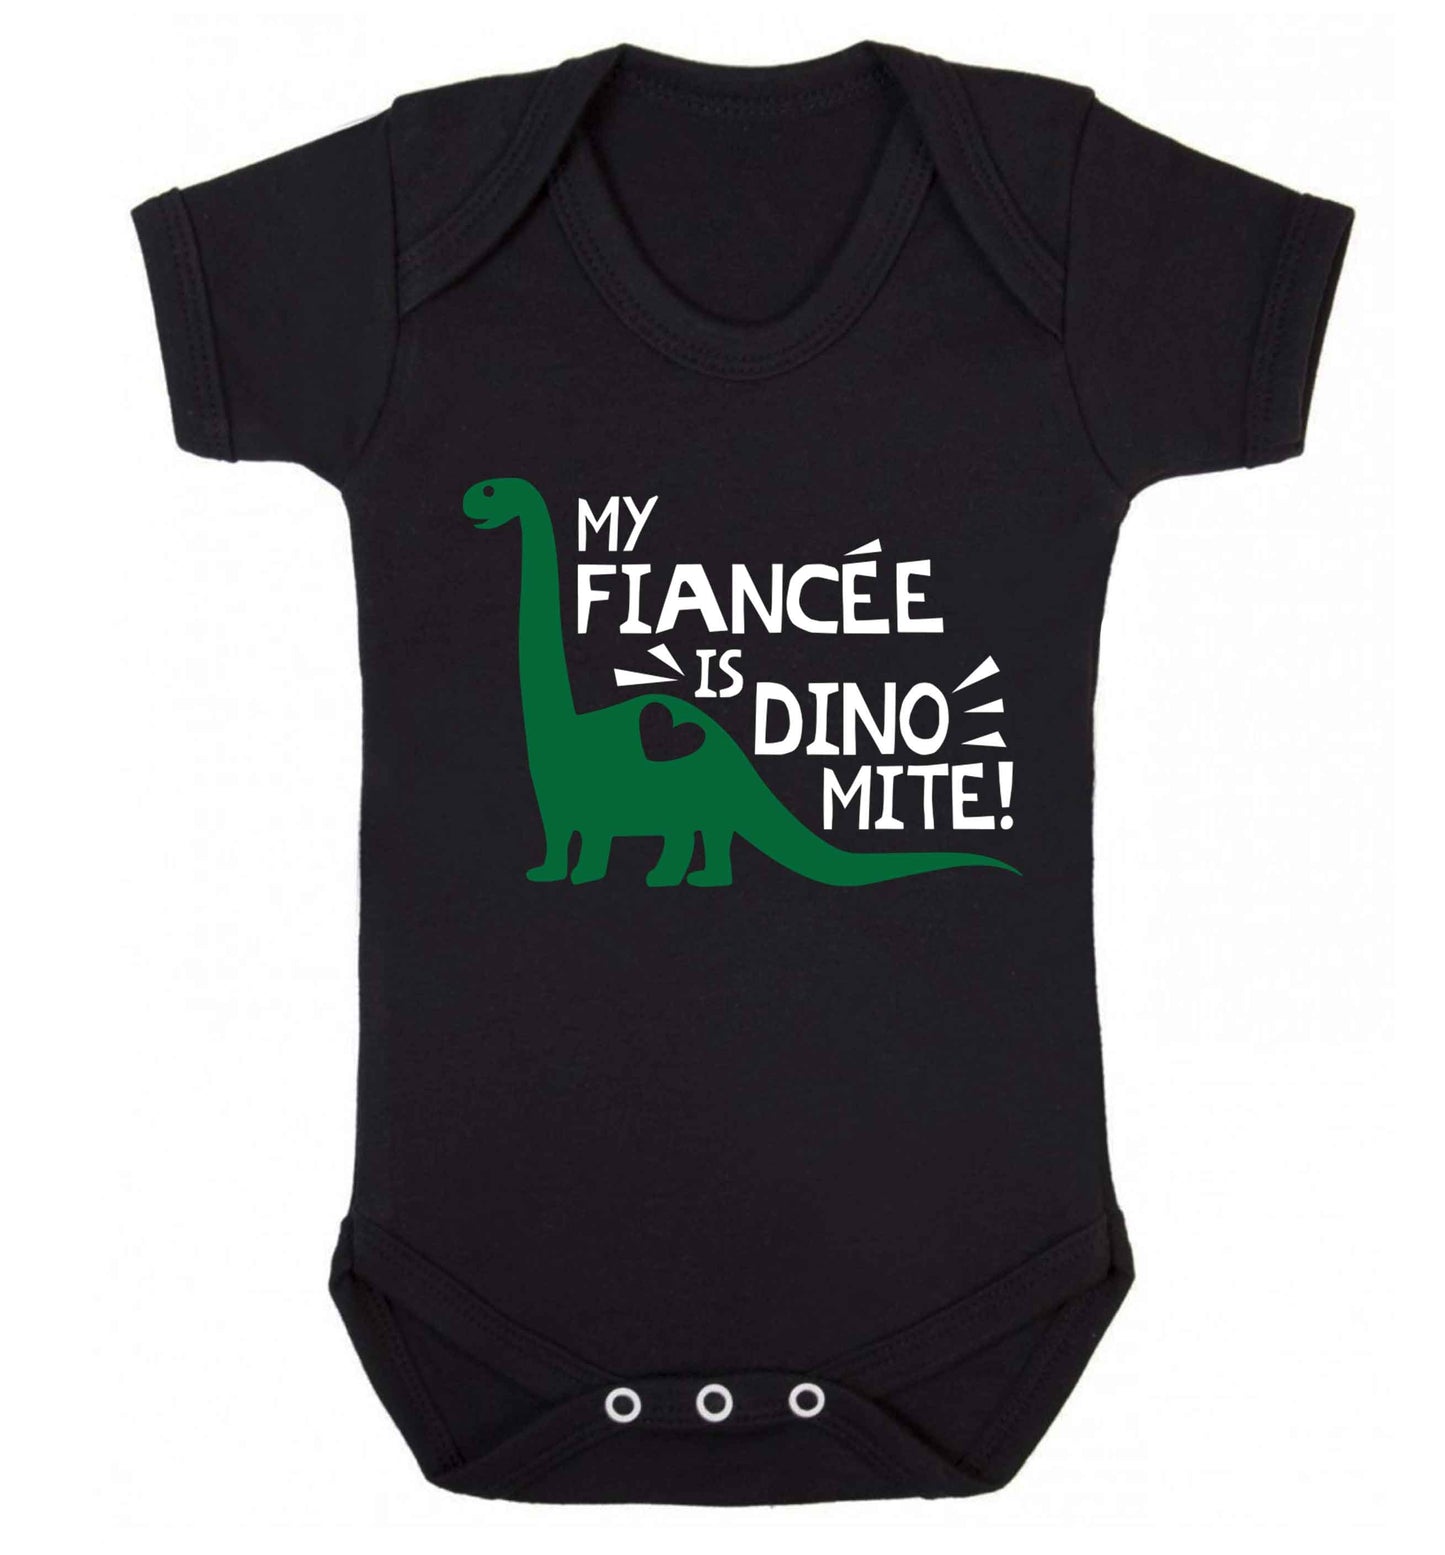 My fiancee is dinomite! Baby Vest black 18-24 months